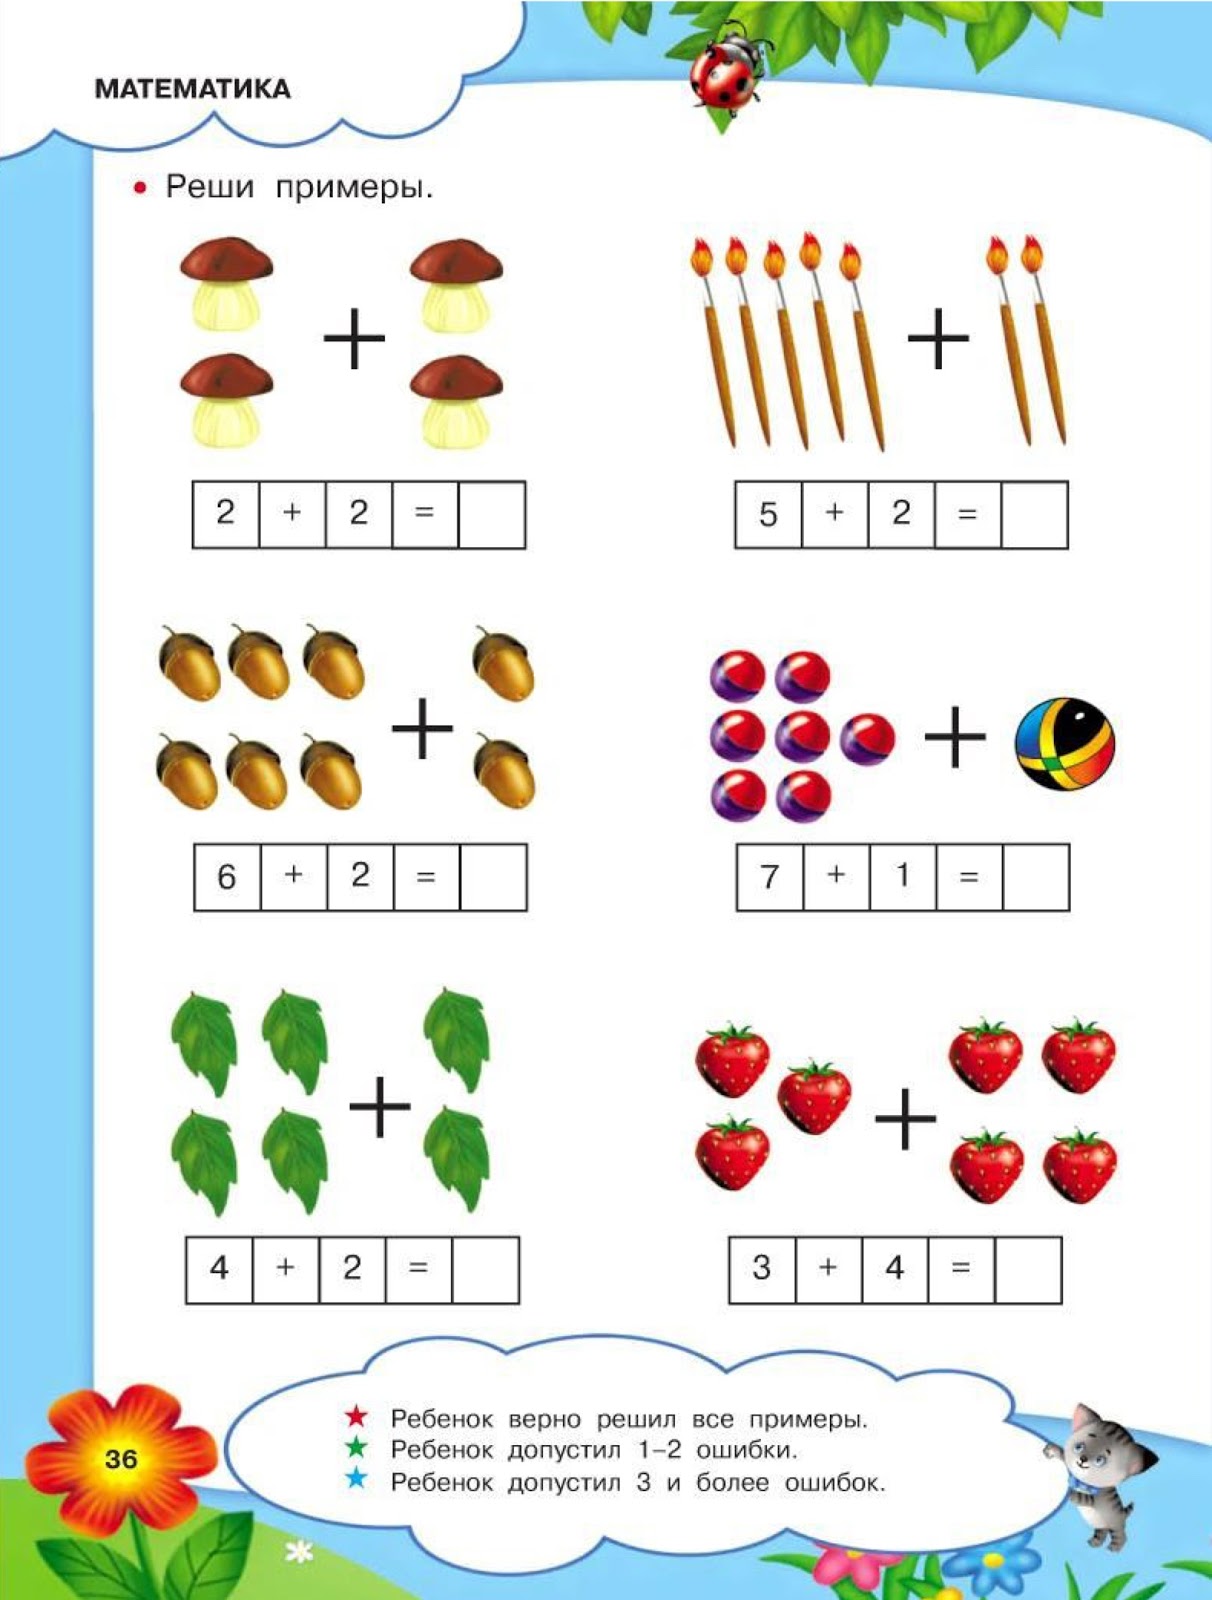 Примеры для детей детского сада. Математические примеры для дошкольников 5-6 лет. Математические примеры для дошкольников 6-7 лет. Примеры для дошкольников 5 лет по математике. Примерыля дошкольников.